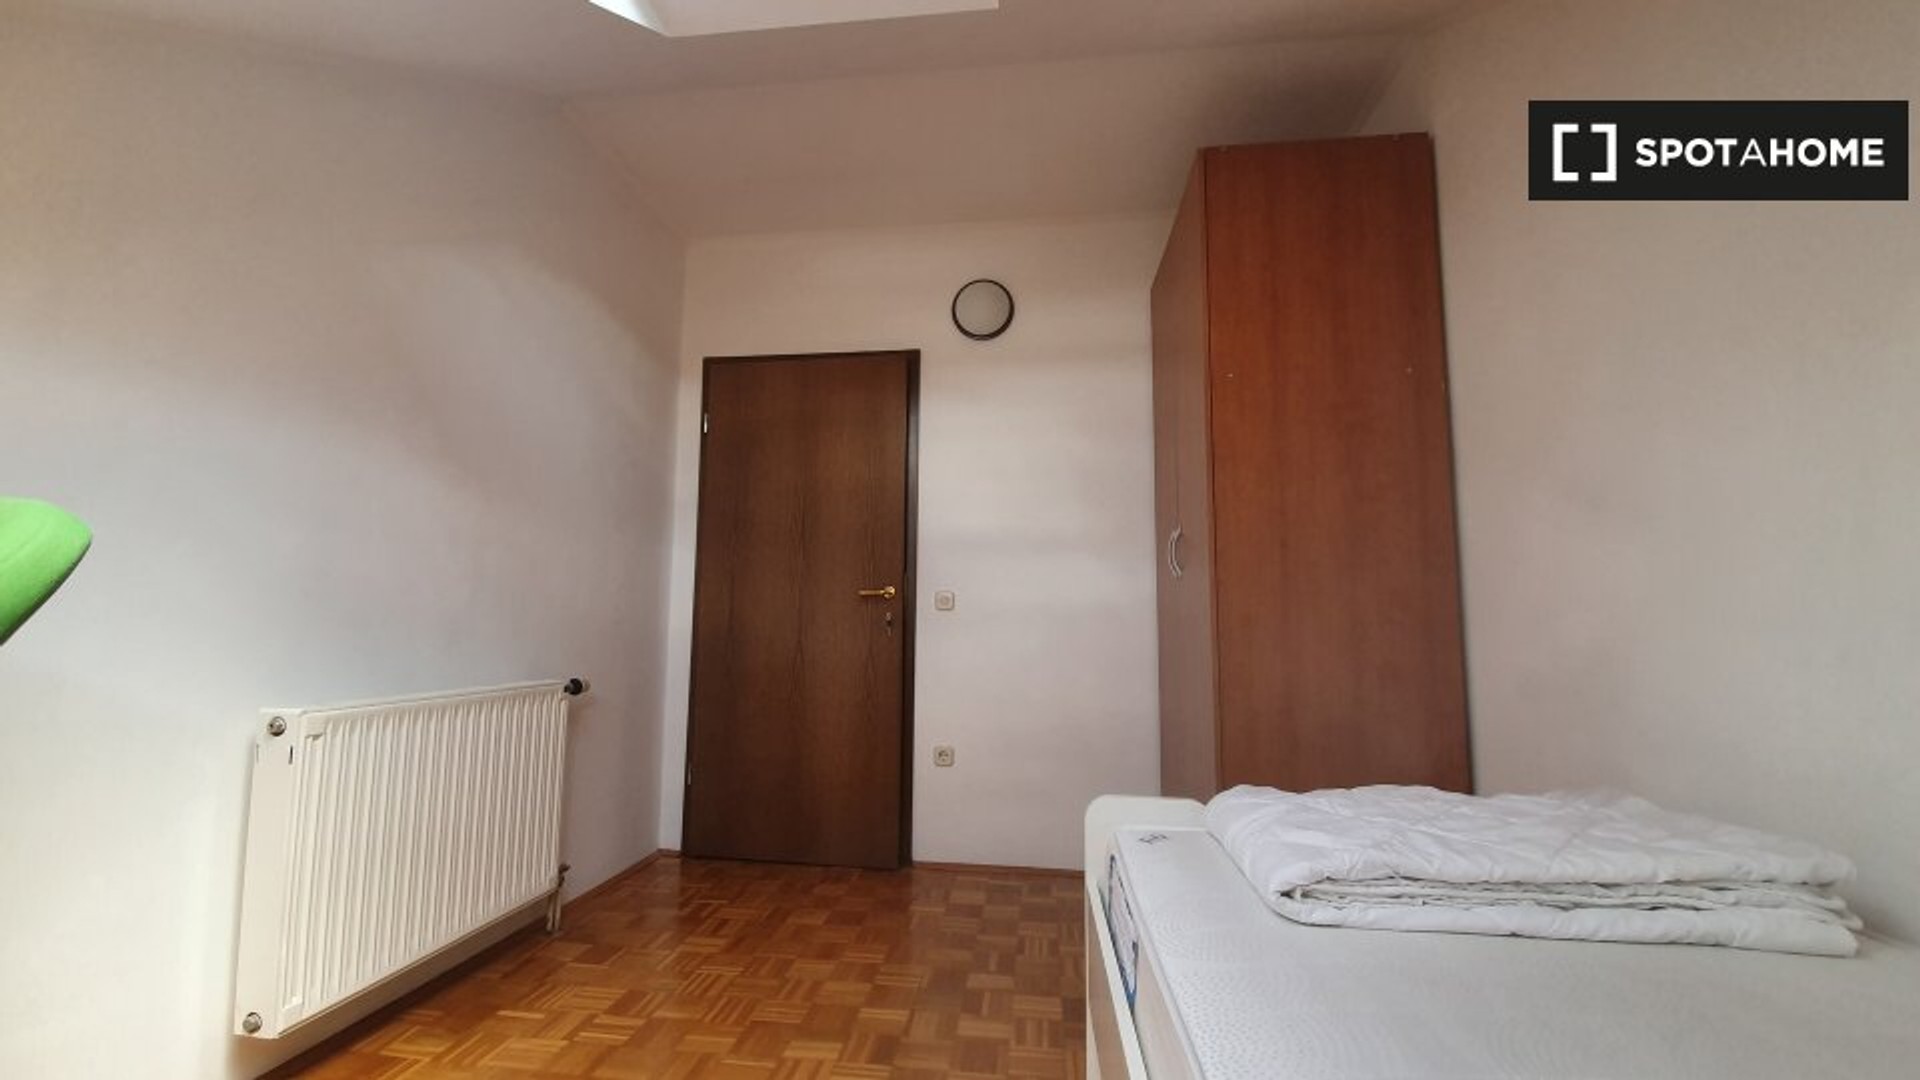 Cheap private room in Ljubljana